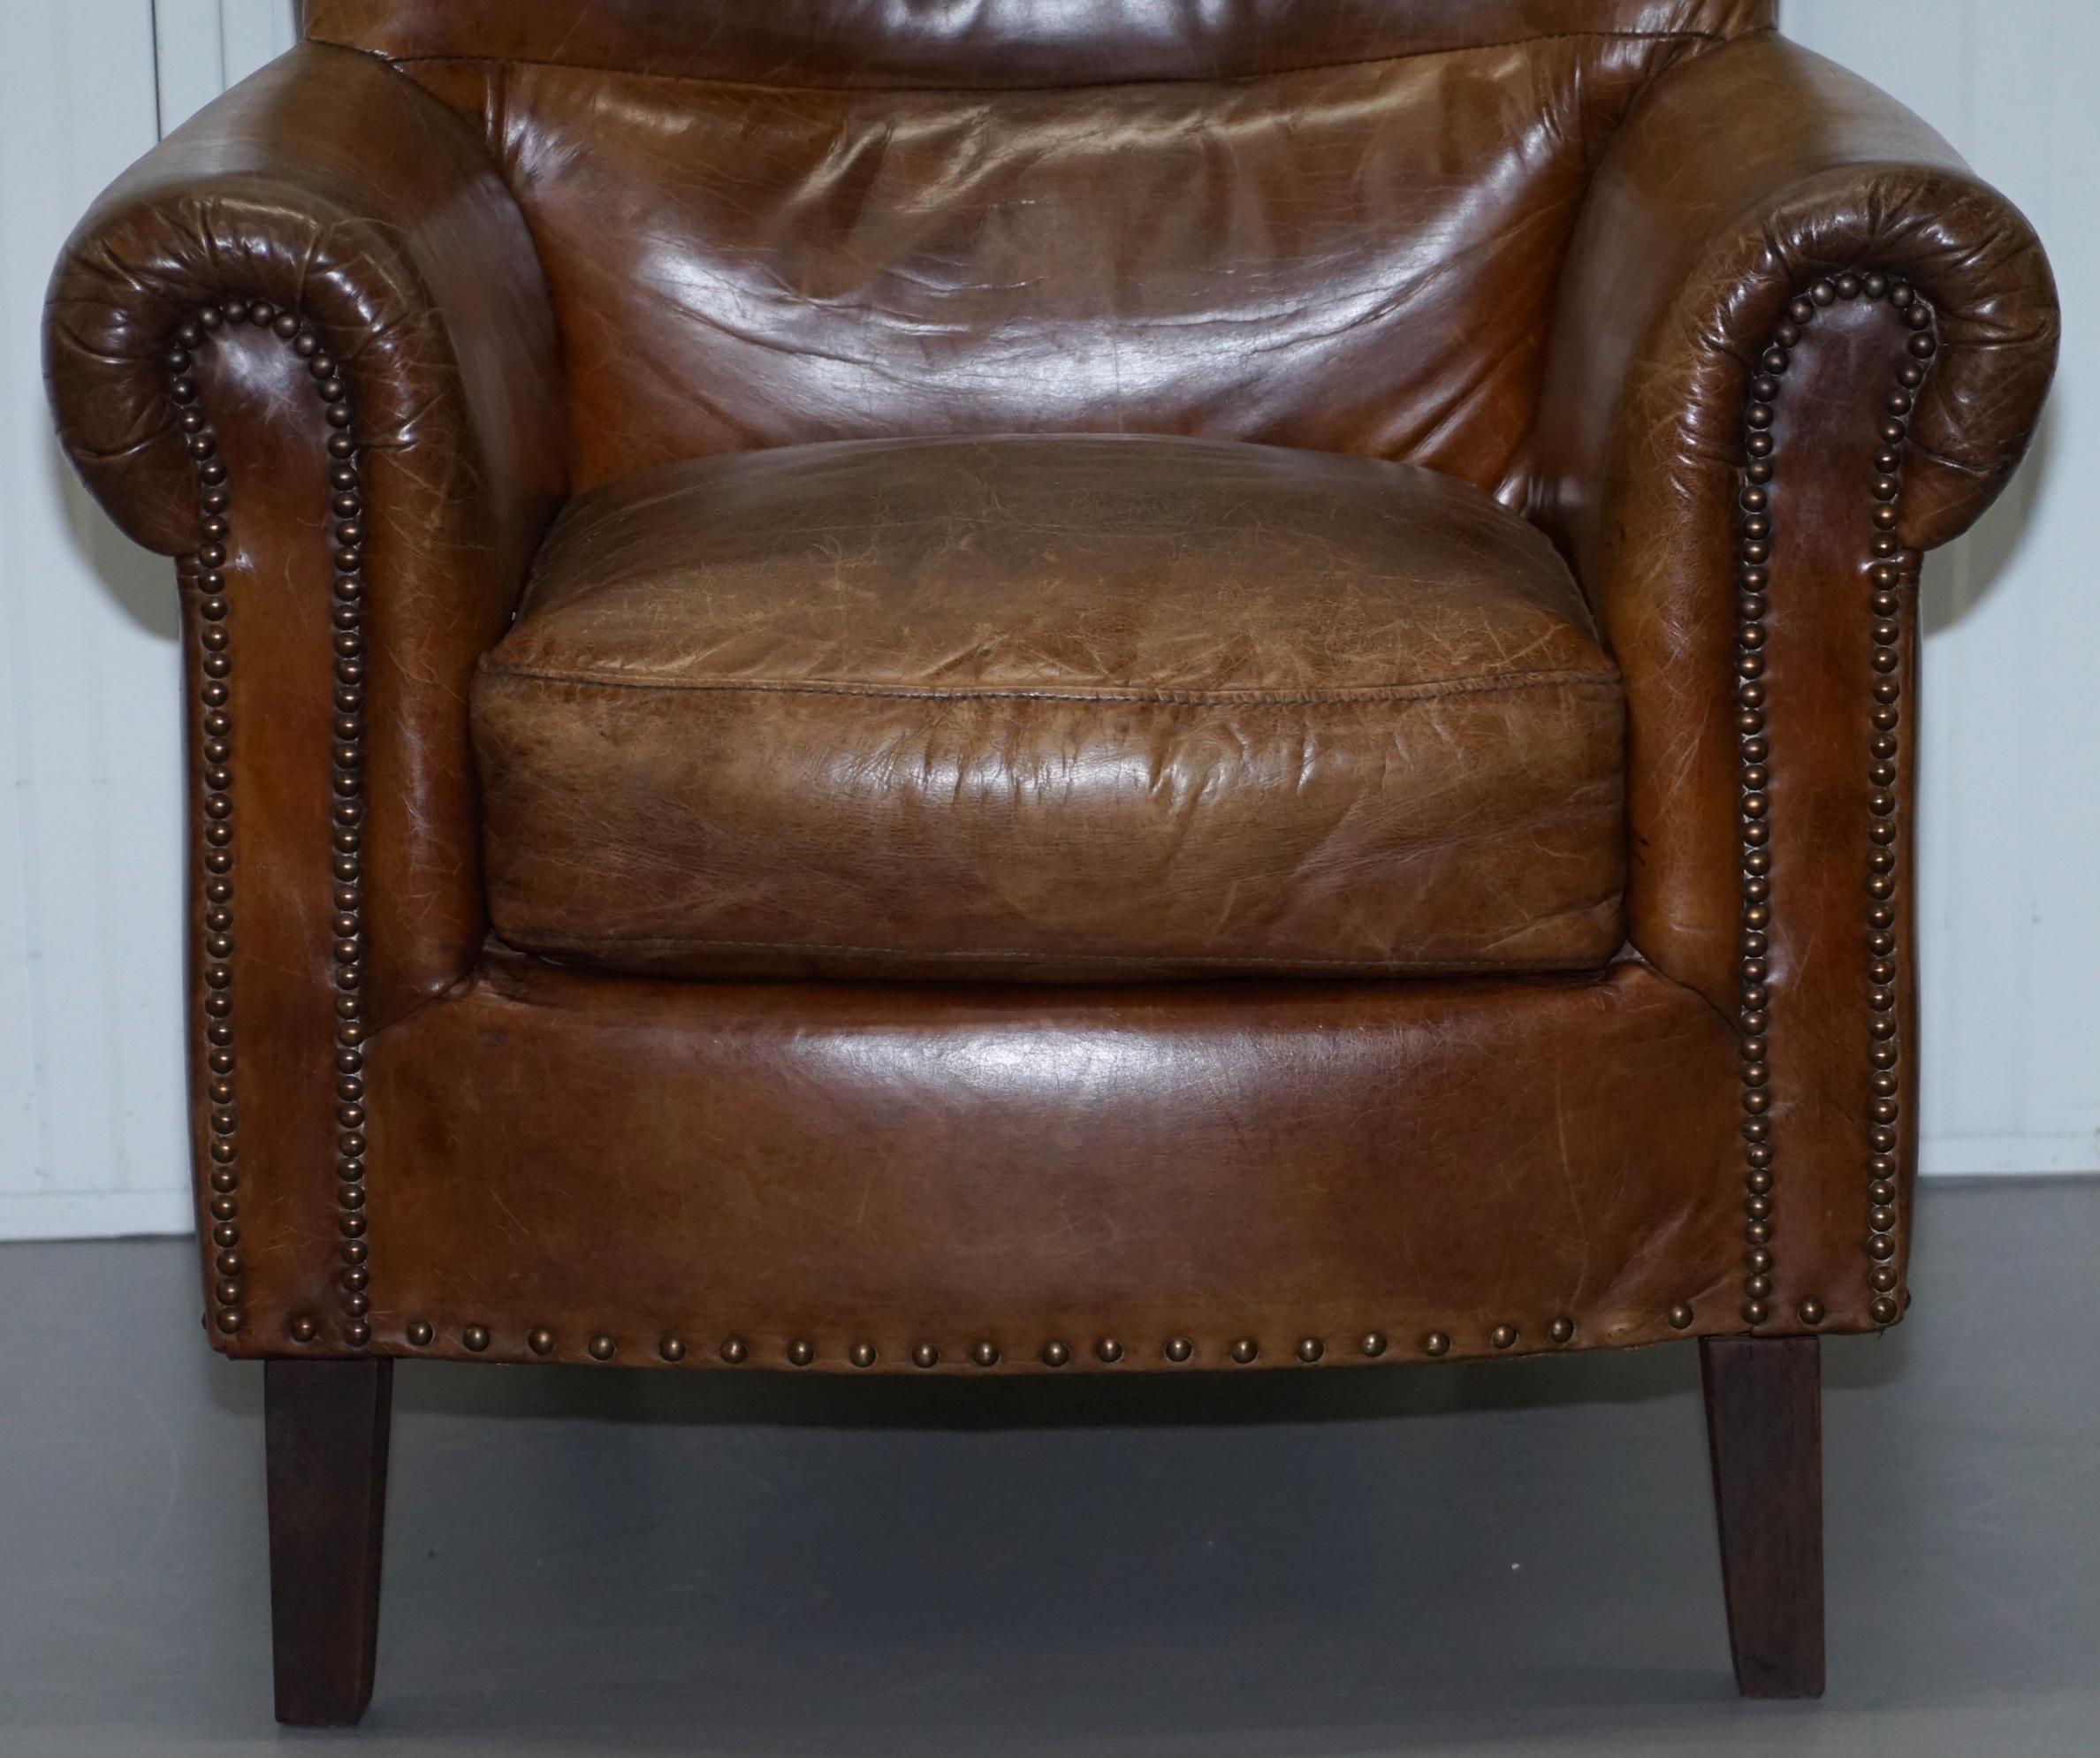 Pair of Heritage Brown Leather Vintage Style Club Armchairs Nice Good Looking (Leder)